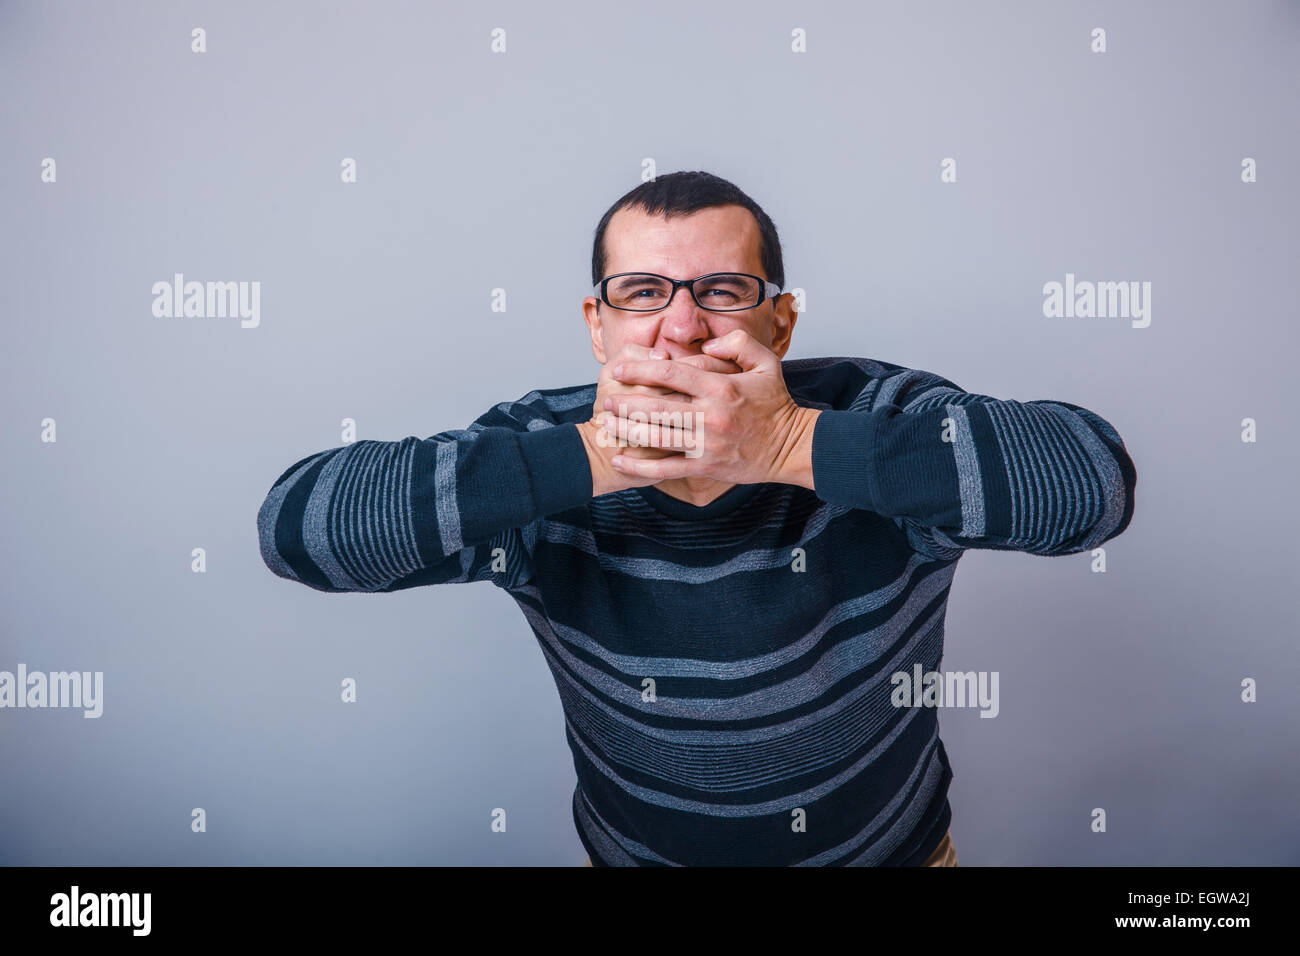 Unione-cerca uomo di trenta anni di indossare occhiali, chiuso Foto Stock